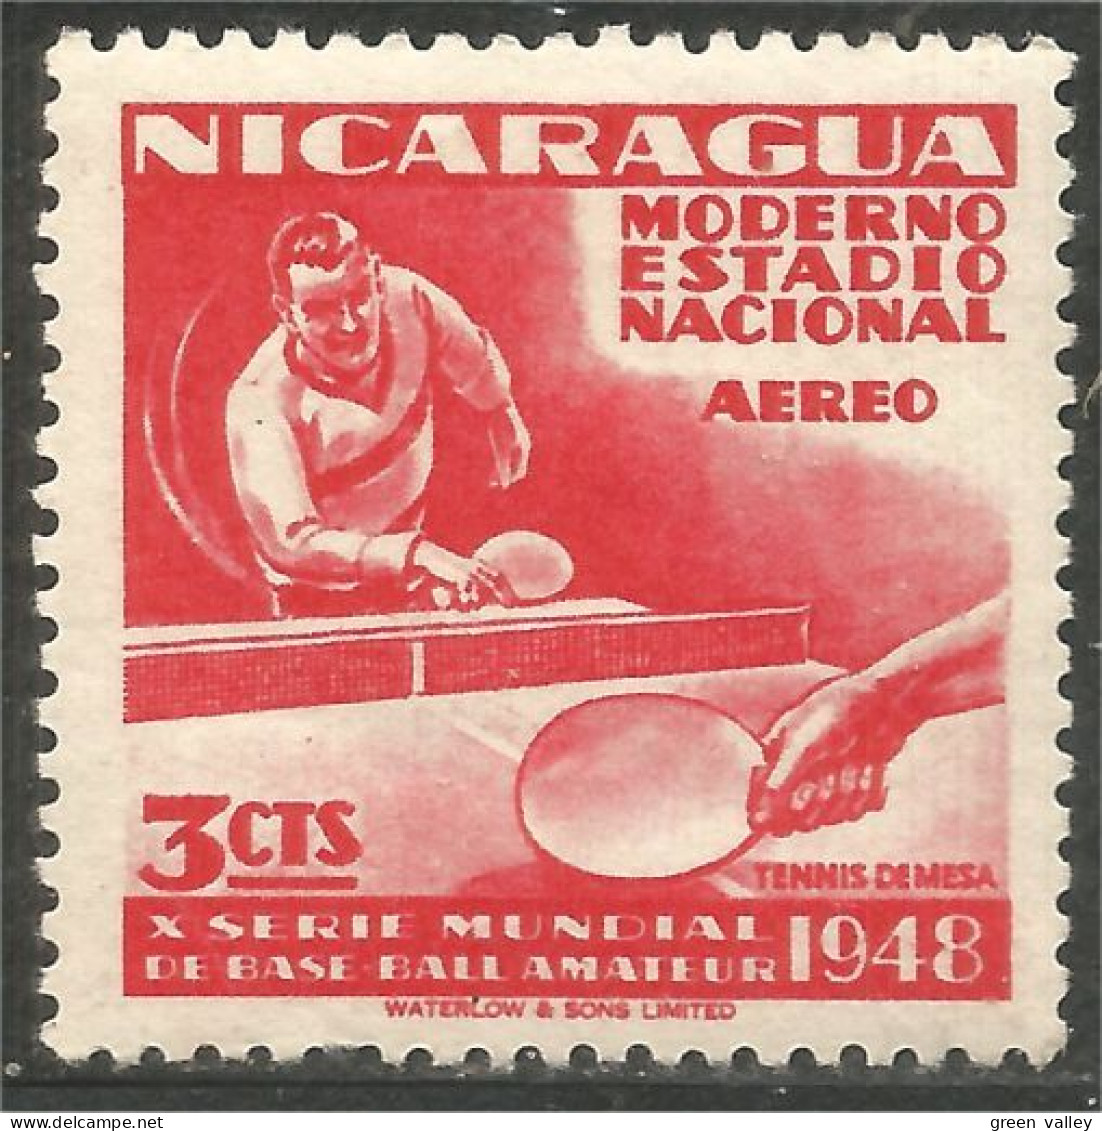 684 Nicaragua Tennis Table Ping Pong MH * Neuf (NIC-585) - Table Tennis